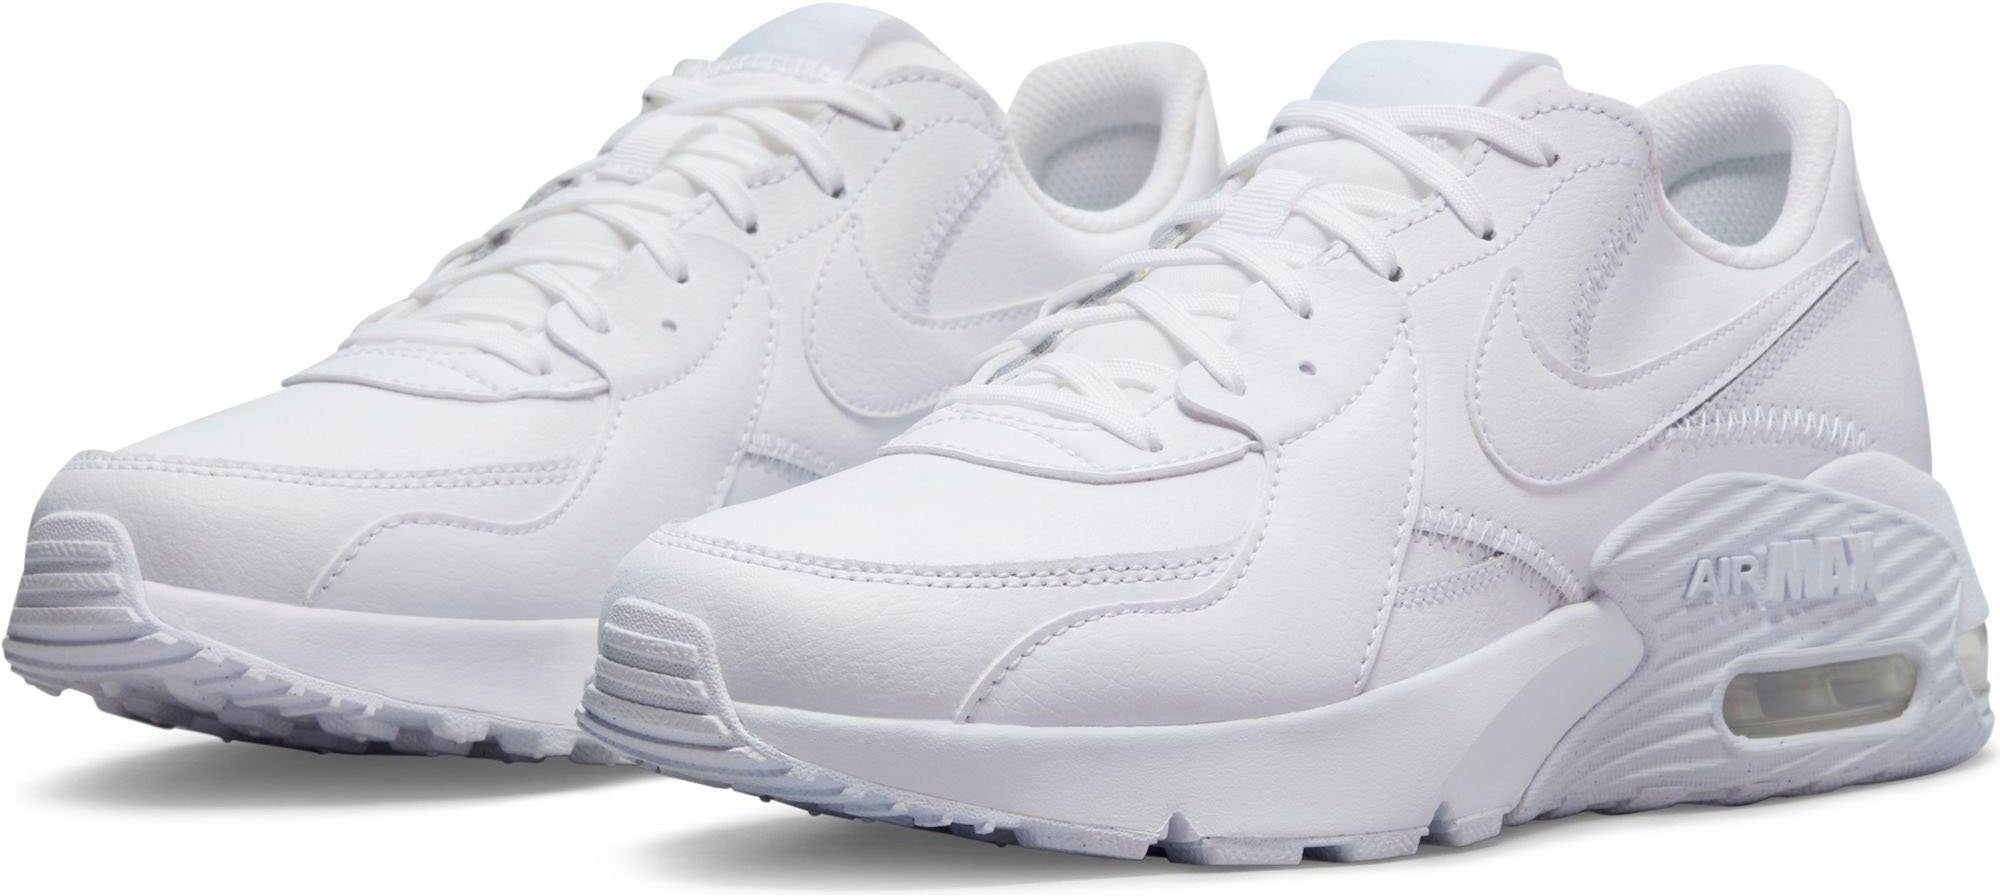 Weiße Nike Schuhe online kaufen | OTTO